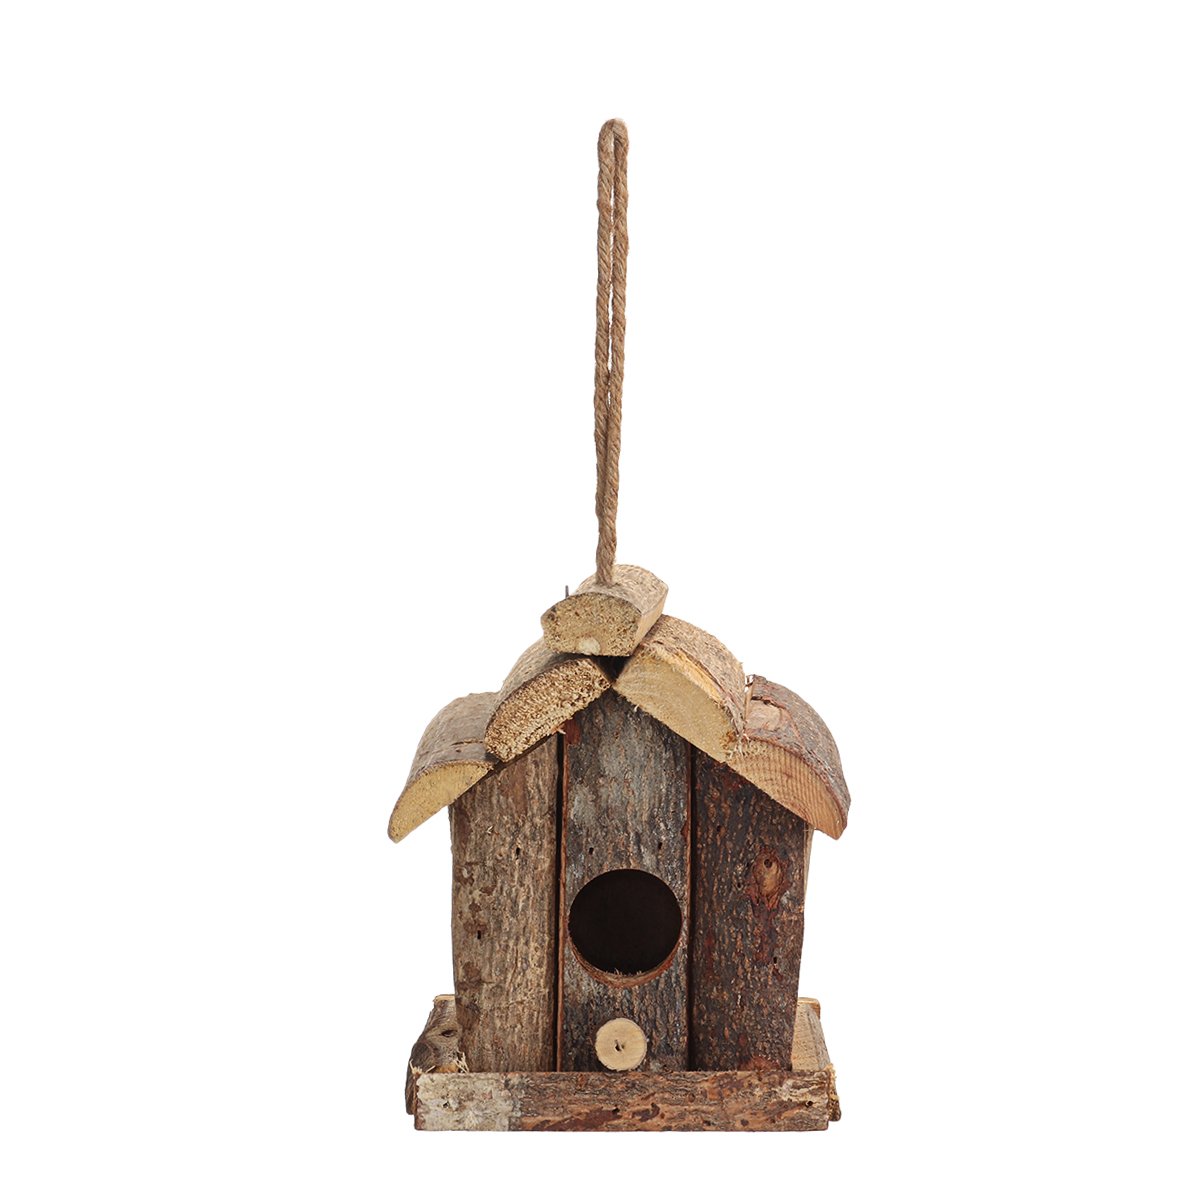 Vintage-Wooden-Bird-House-Nesting-Box-Small-Wild-Birds-Nest-Home-Garden-Decoration-1725292-6